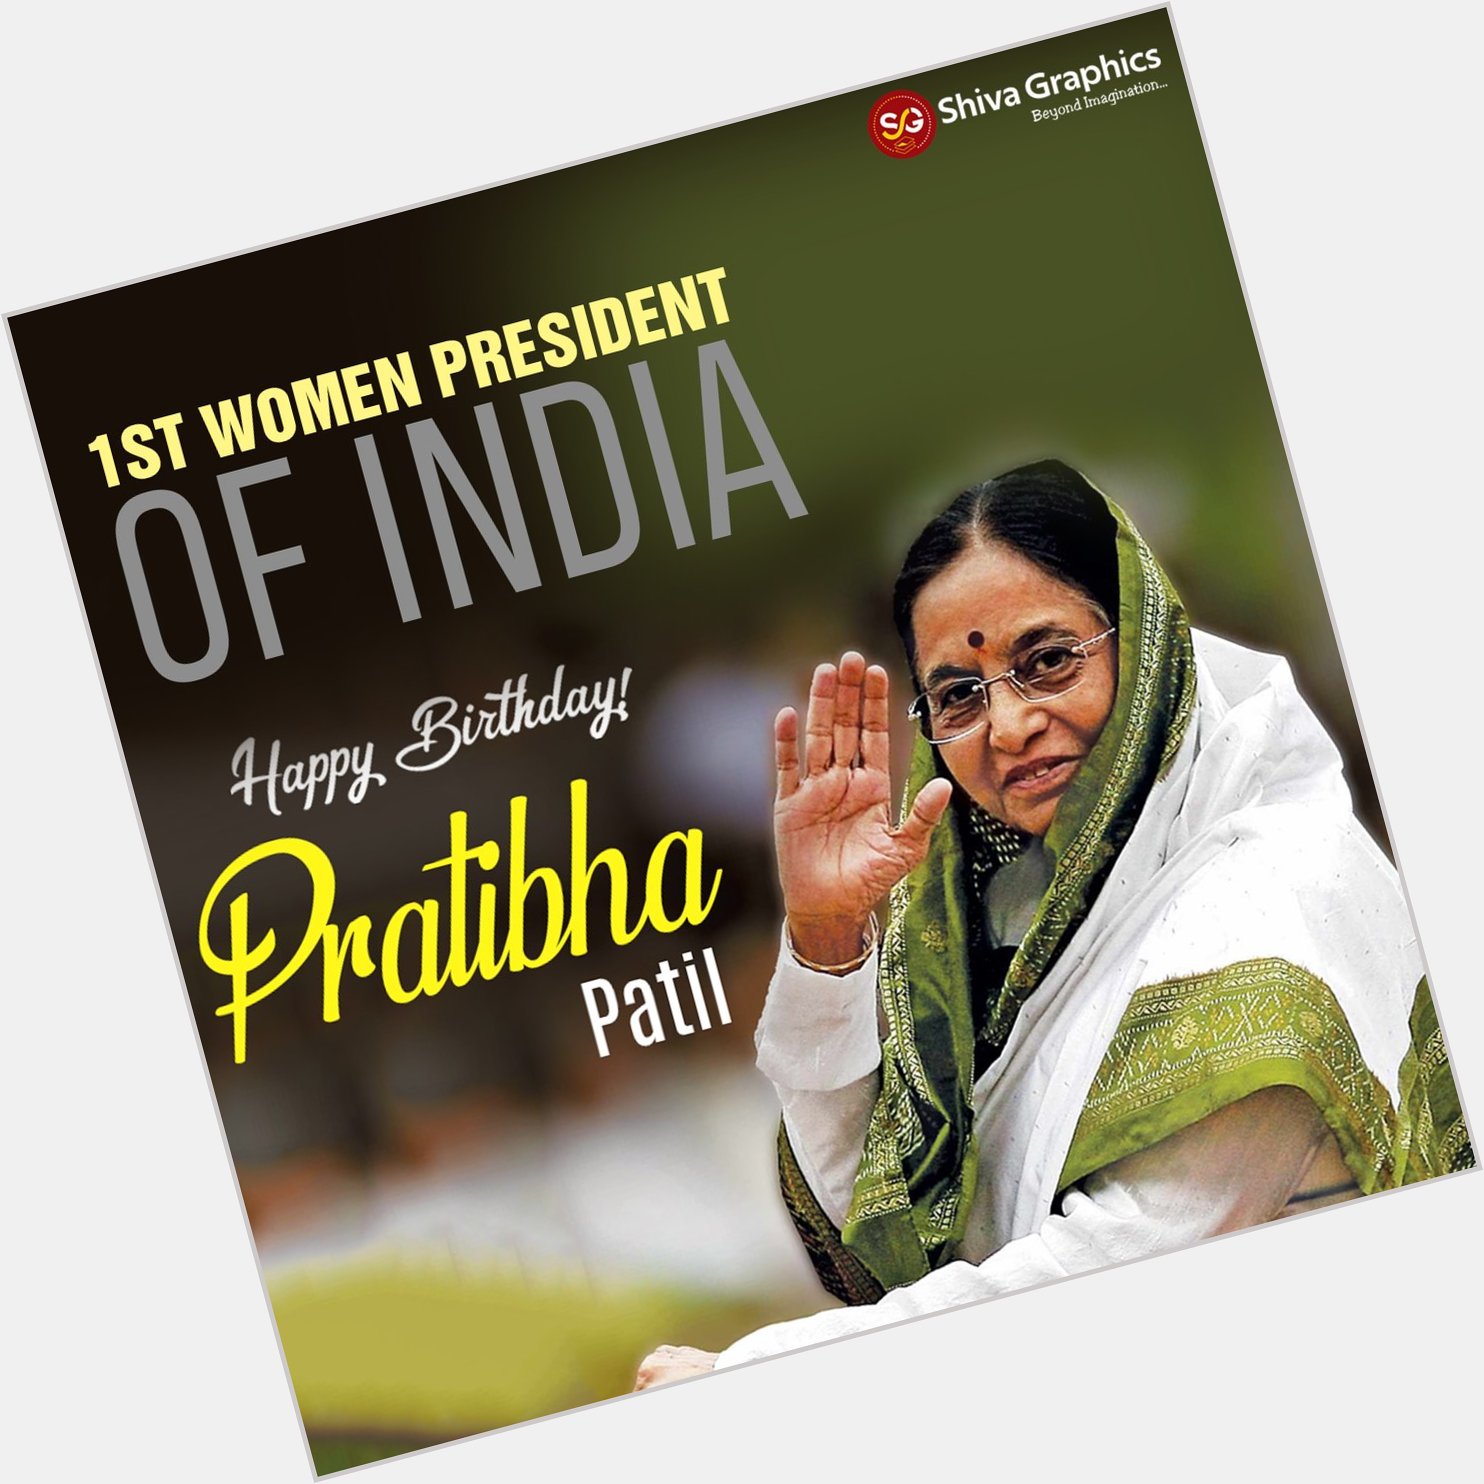 Happy Birthday
.
Pratibha Patil
Former President of India 